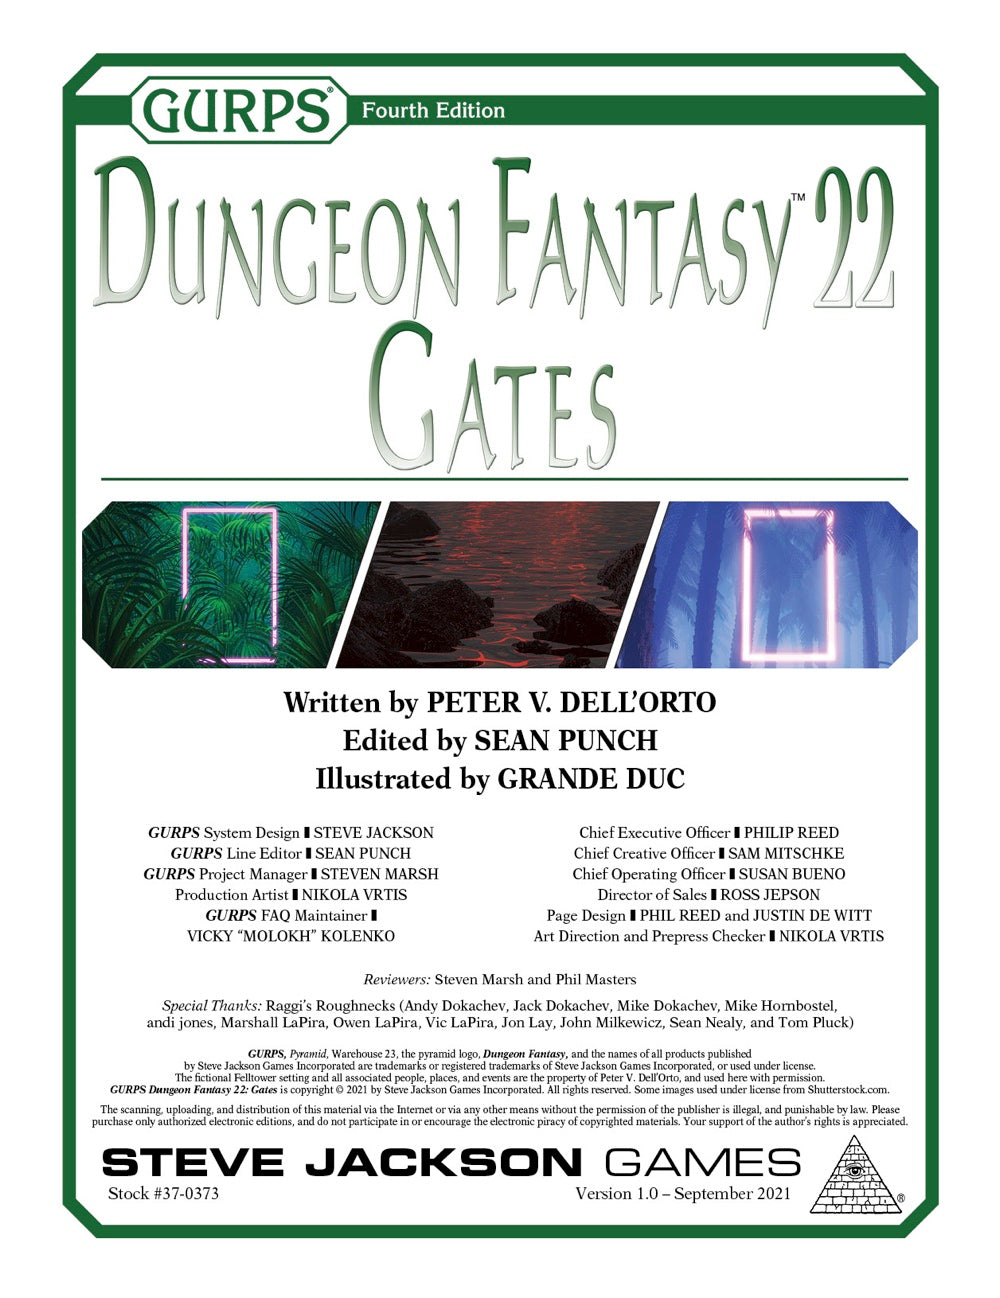 GURPS Dungeon Fantasy 22: Gates